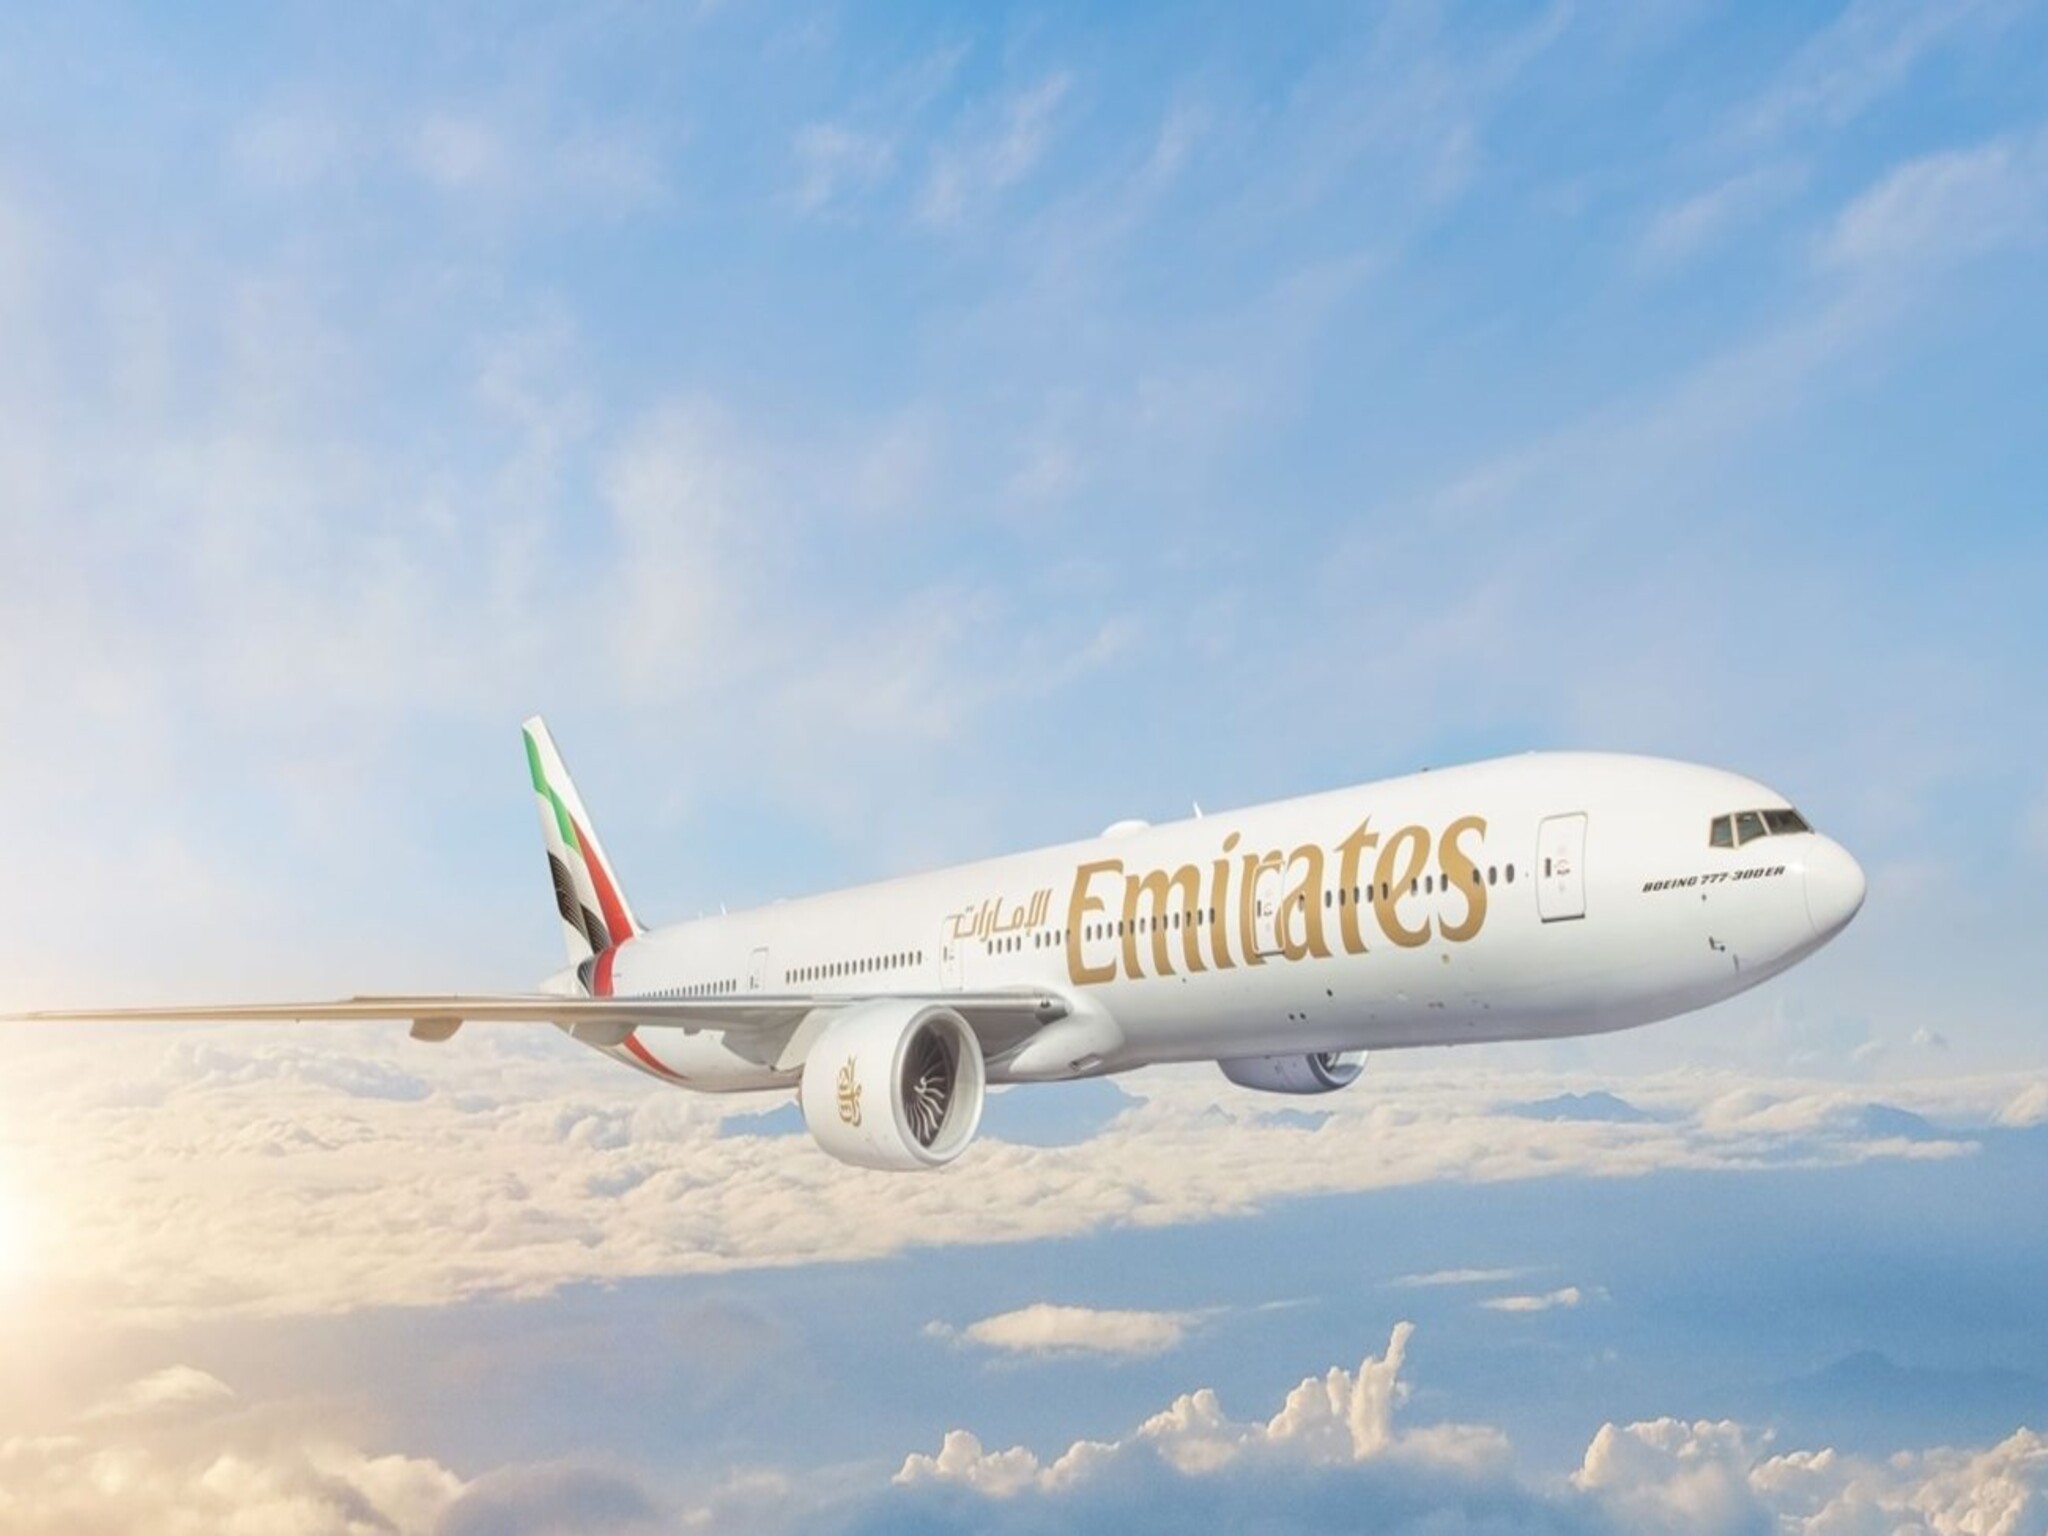 طيران الإمارات تصدر بيان للعملاء المتأثرين بإلغاء رحلاتهم بسبب الأحوال الجوية